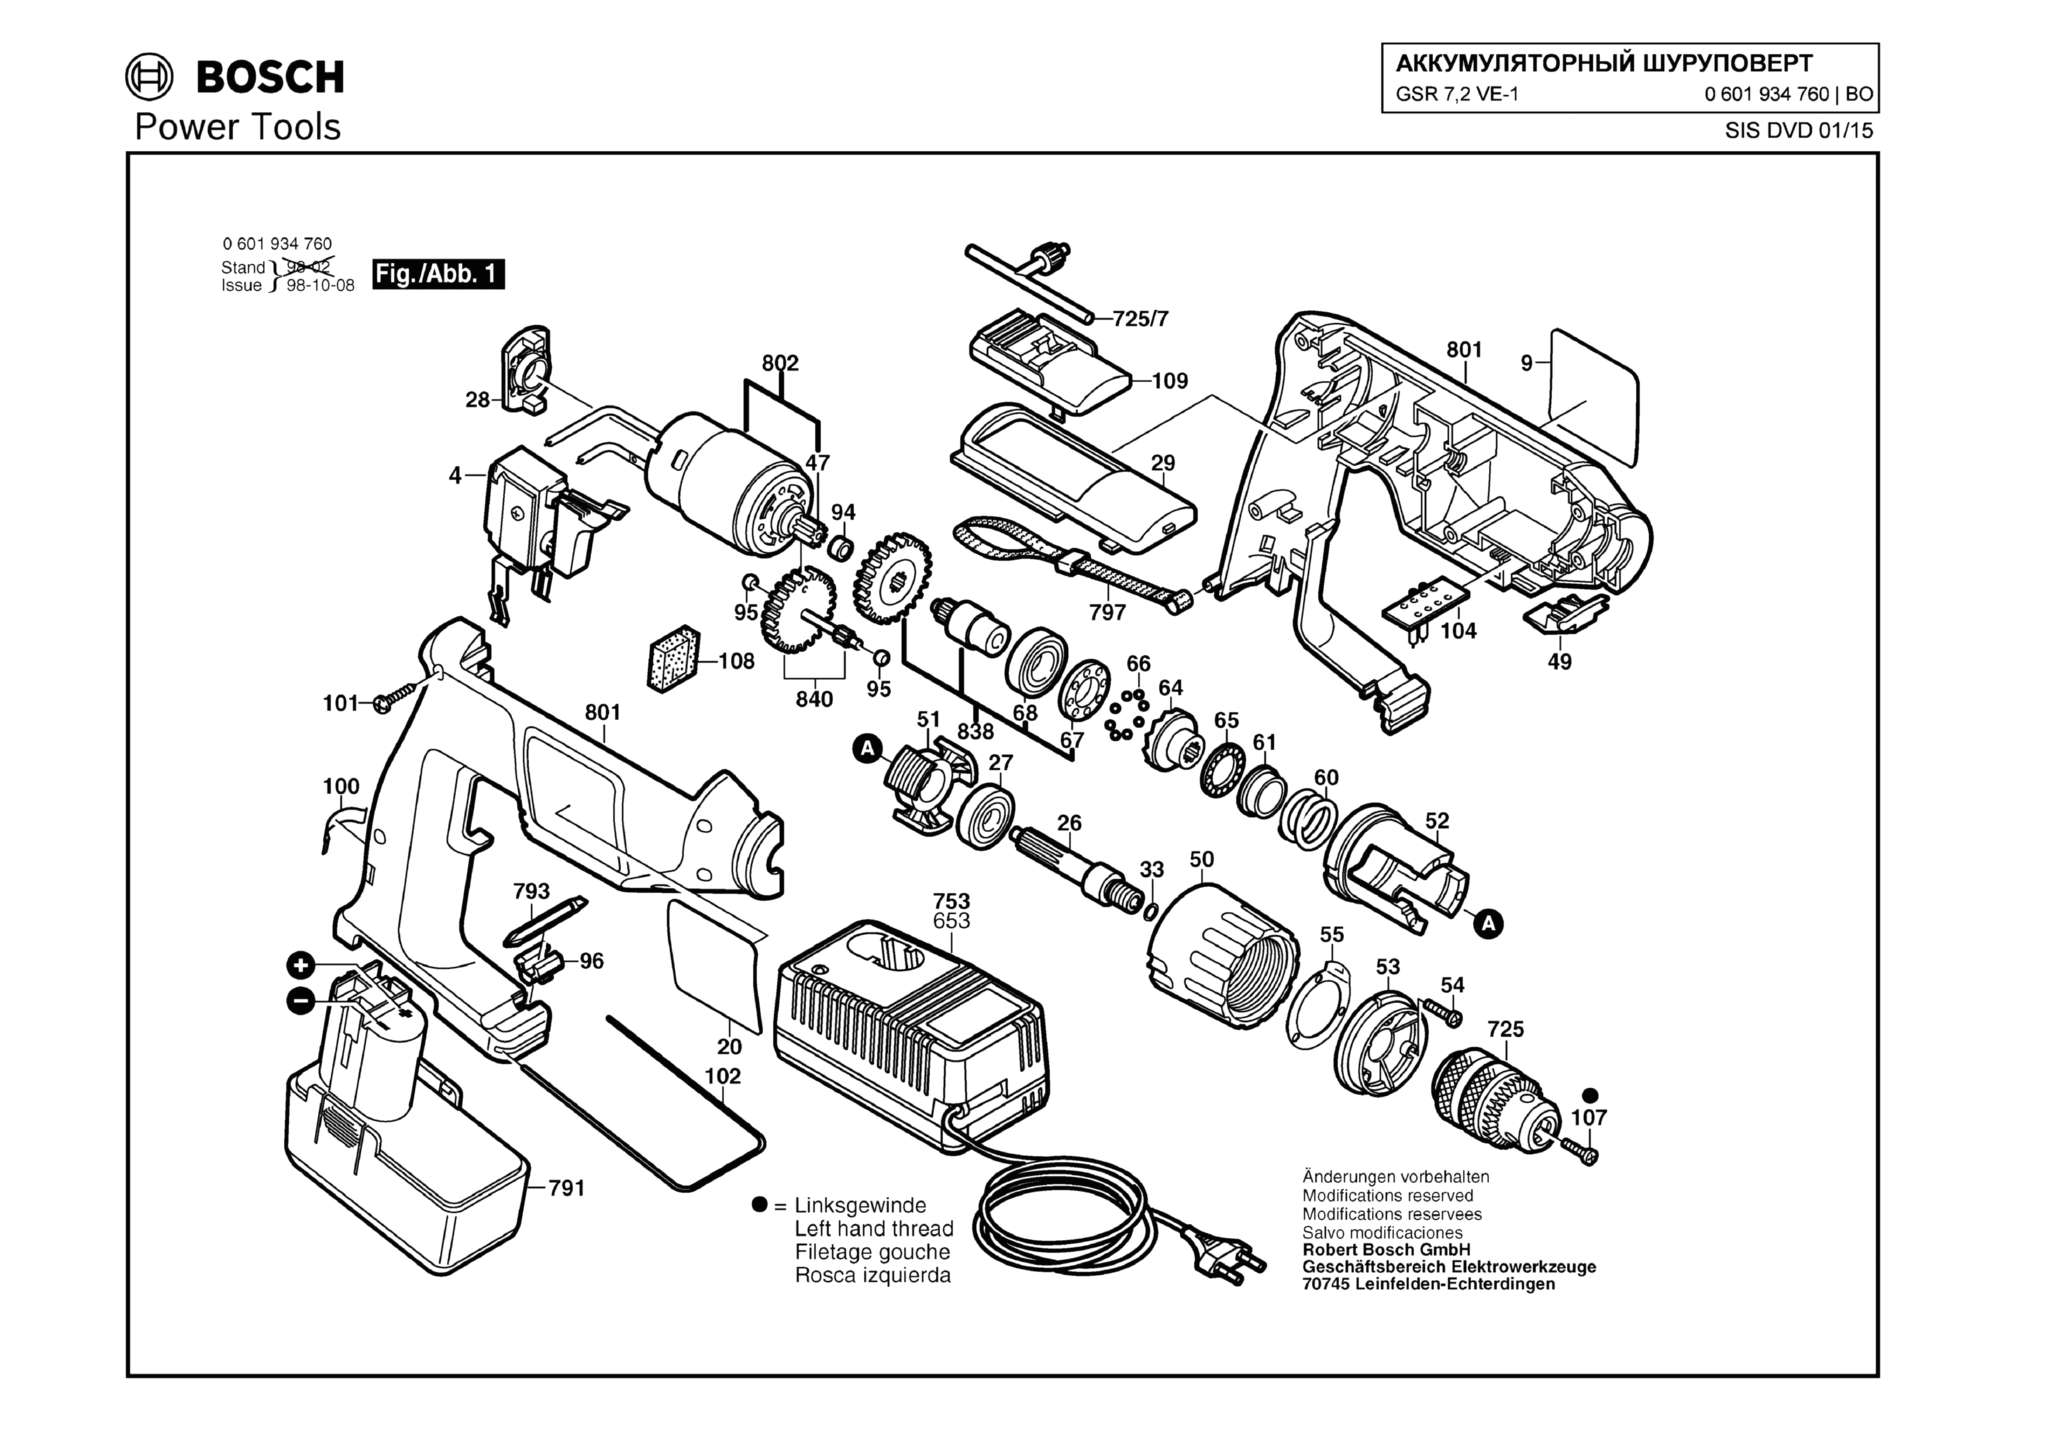 Запчасти, схема и деталировка Bosch GSR 7,2 VE-1 (ТИП 0601934760)